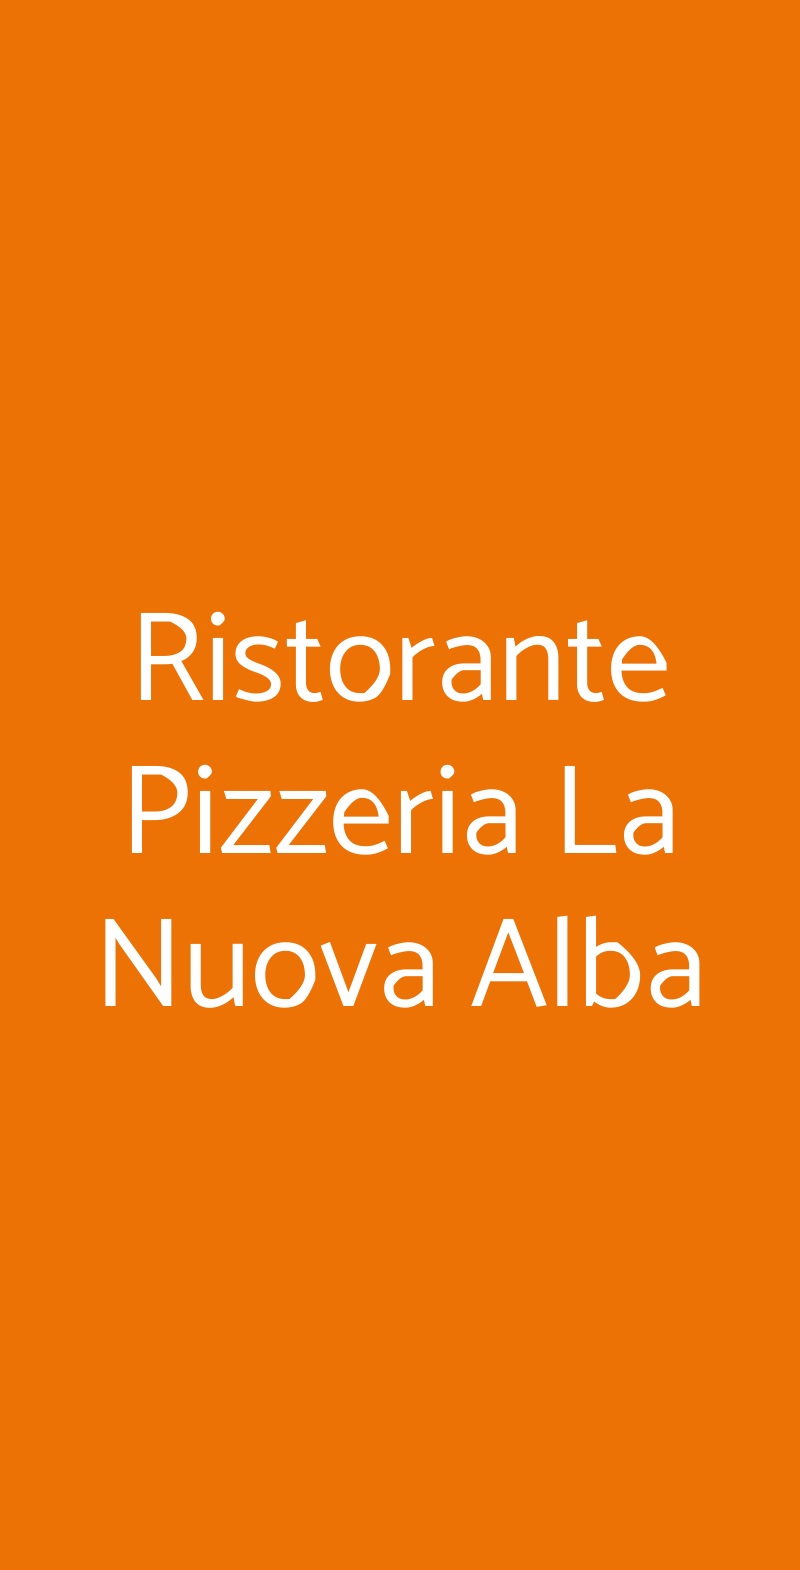 Ristorante Pizzeria La Nuova Alba Cesano Boscone menù 1 pagina